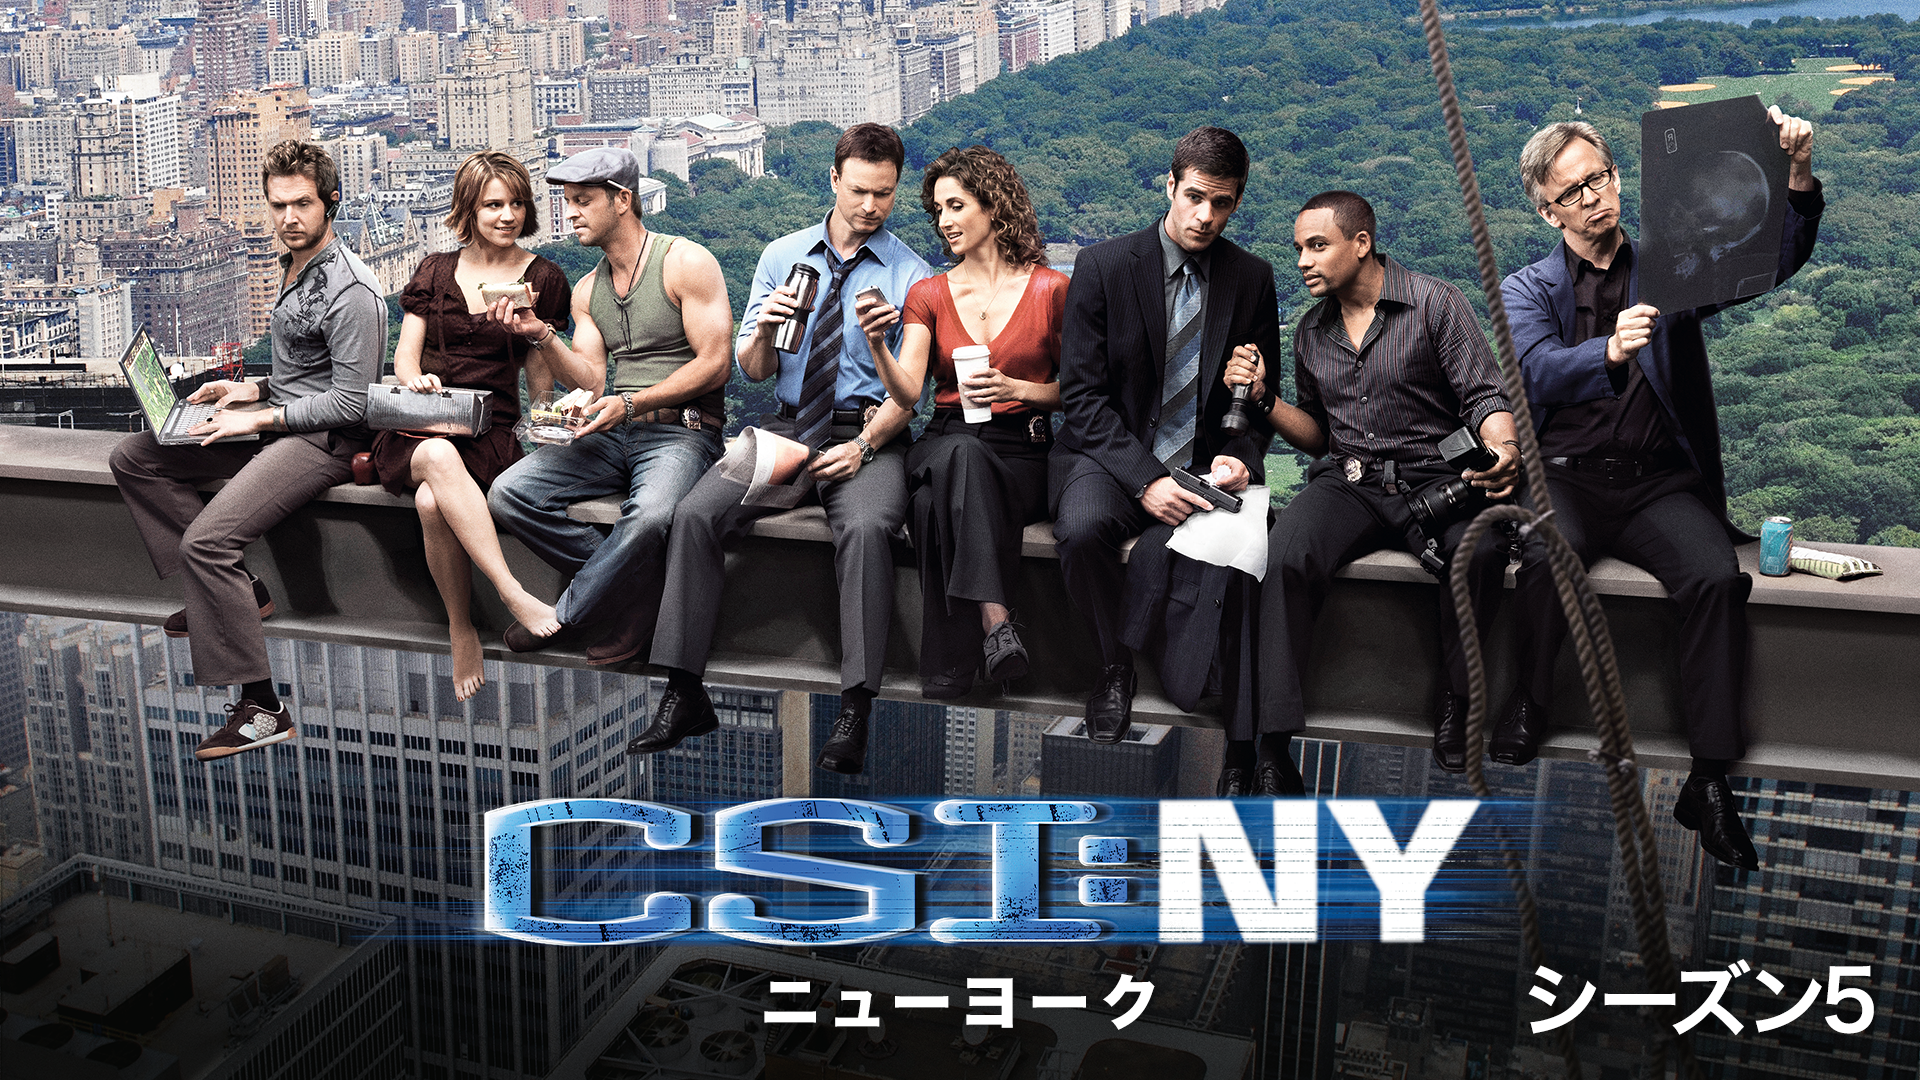 CSI：ニューヨーク シーズン5(海外ドラマ / 2008) - 動画配信 | U-NEXT 31日間無料トライアル